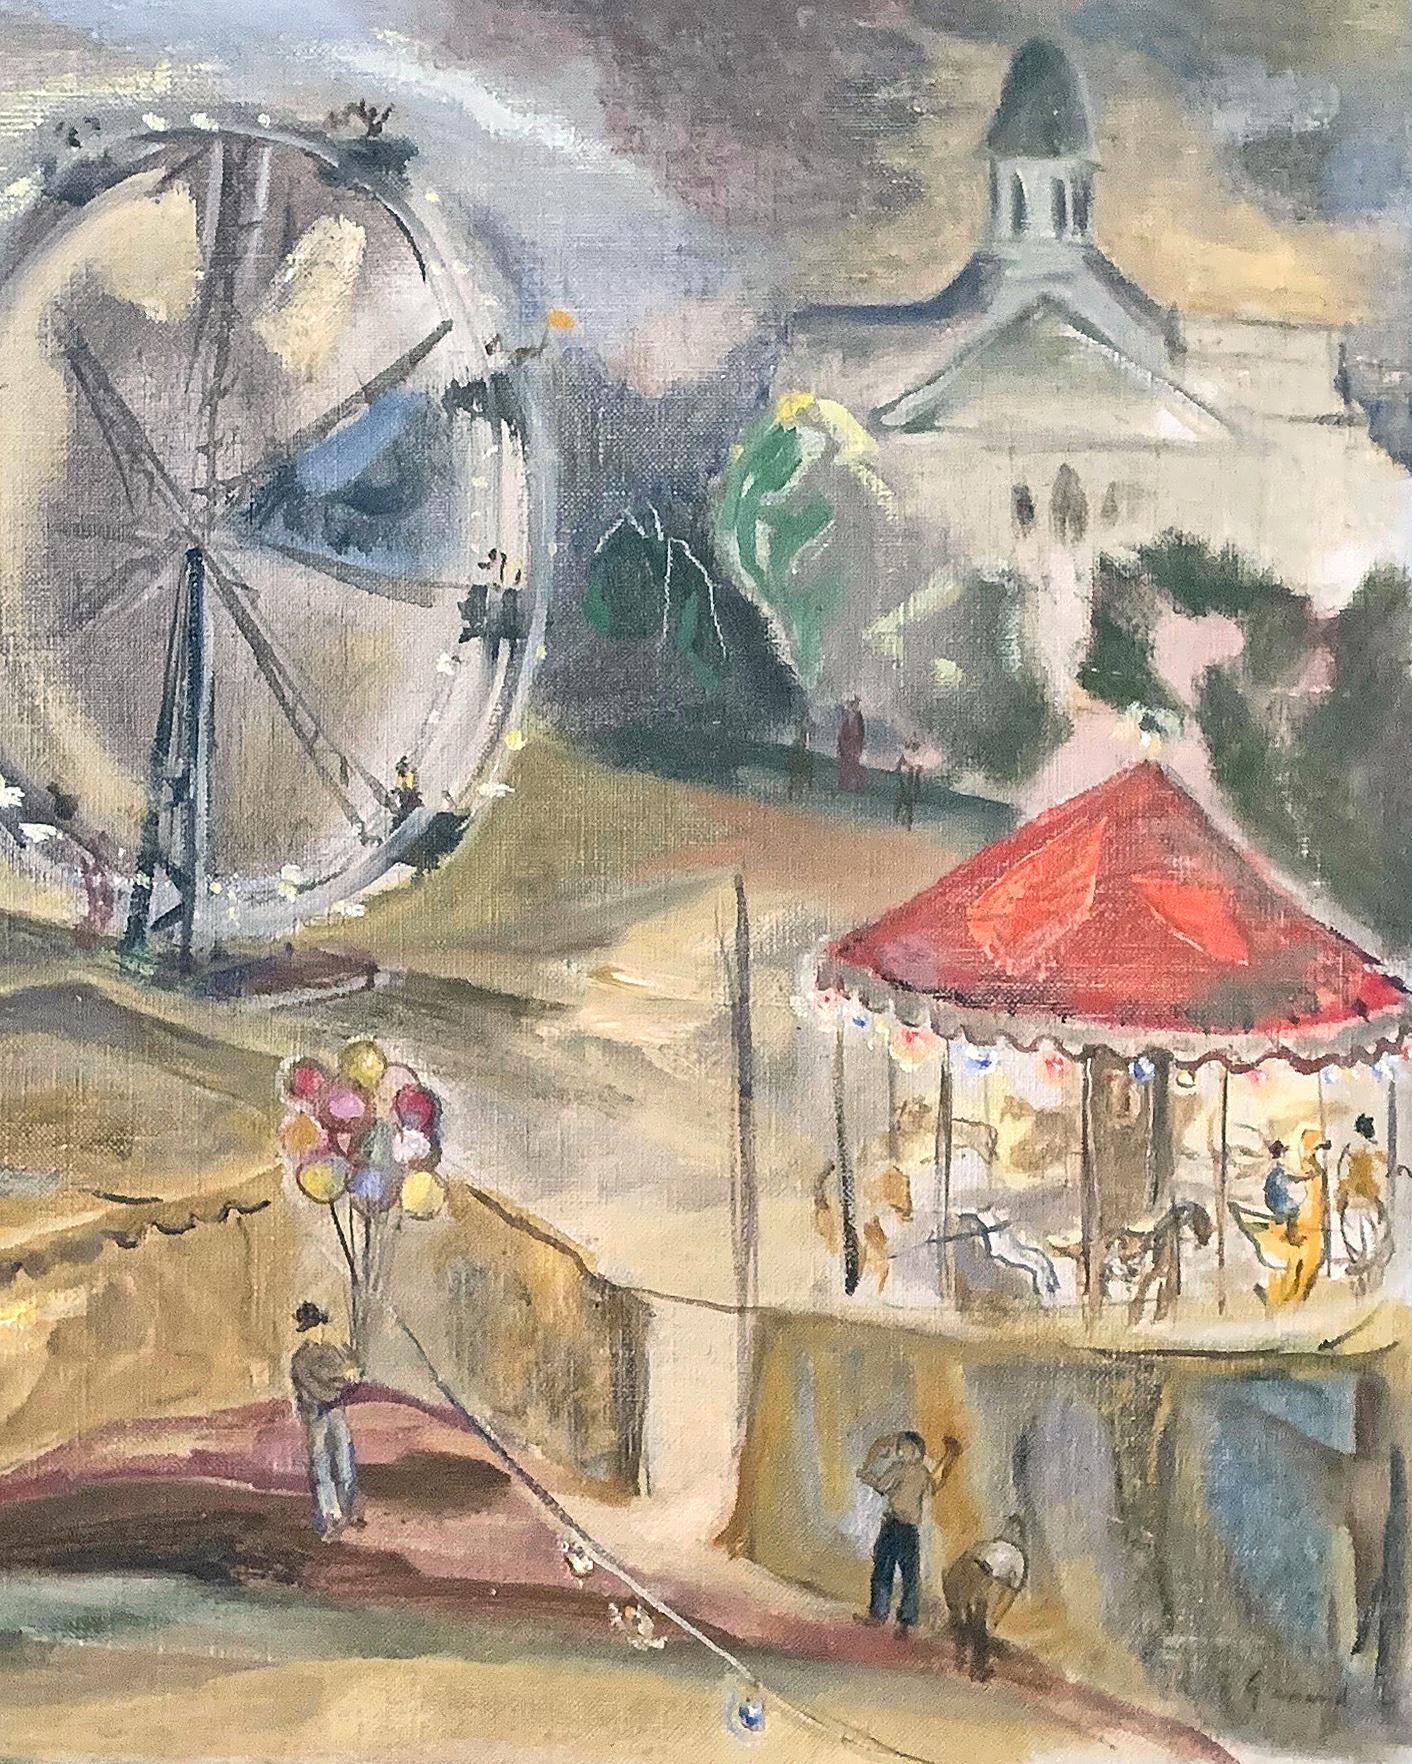 Célébration de l'Amérique des années 1930, pleine d'atmosphère et de couleurs, cette peinture de John Gernand représente une fête foraine à Manchester, dans le New Hampshire, avec un carrousel, une grande roue, des tentes et des affiches colorées